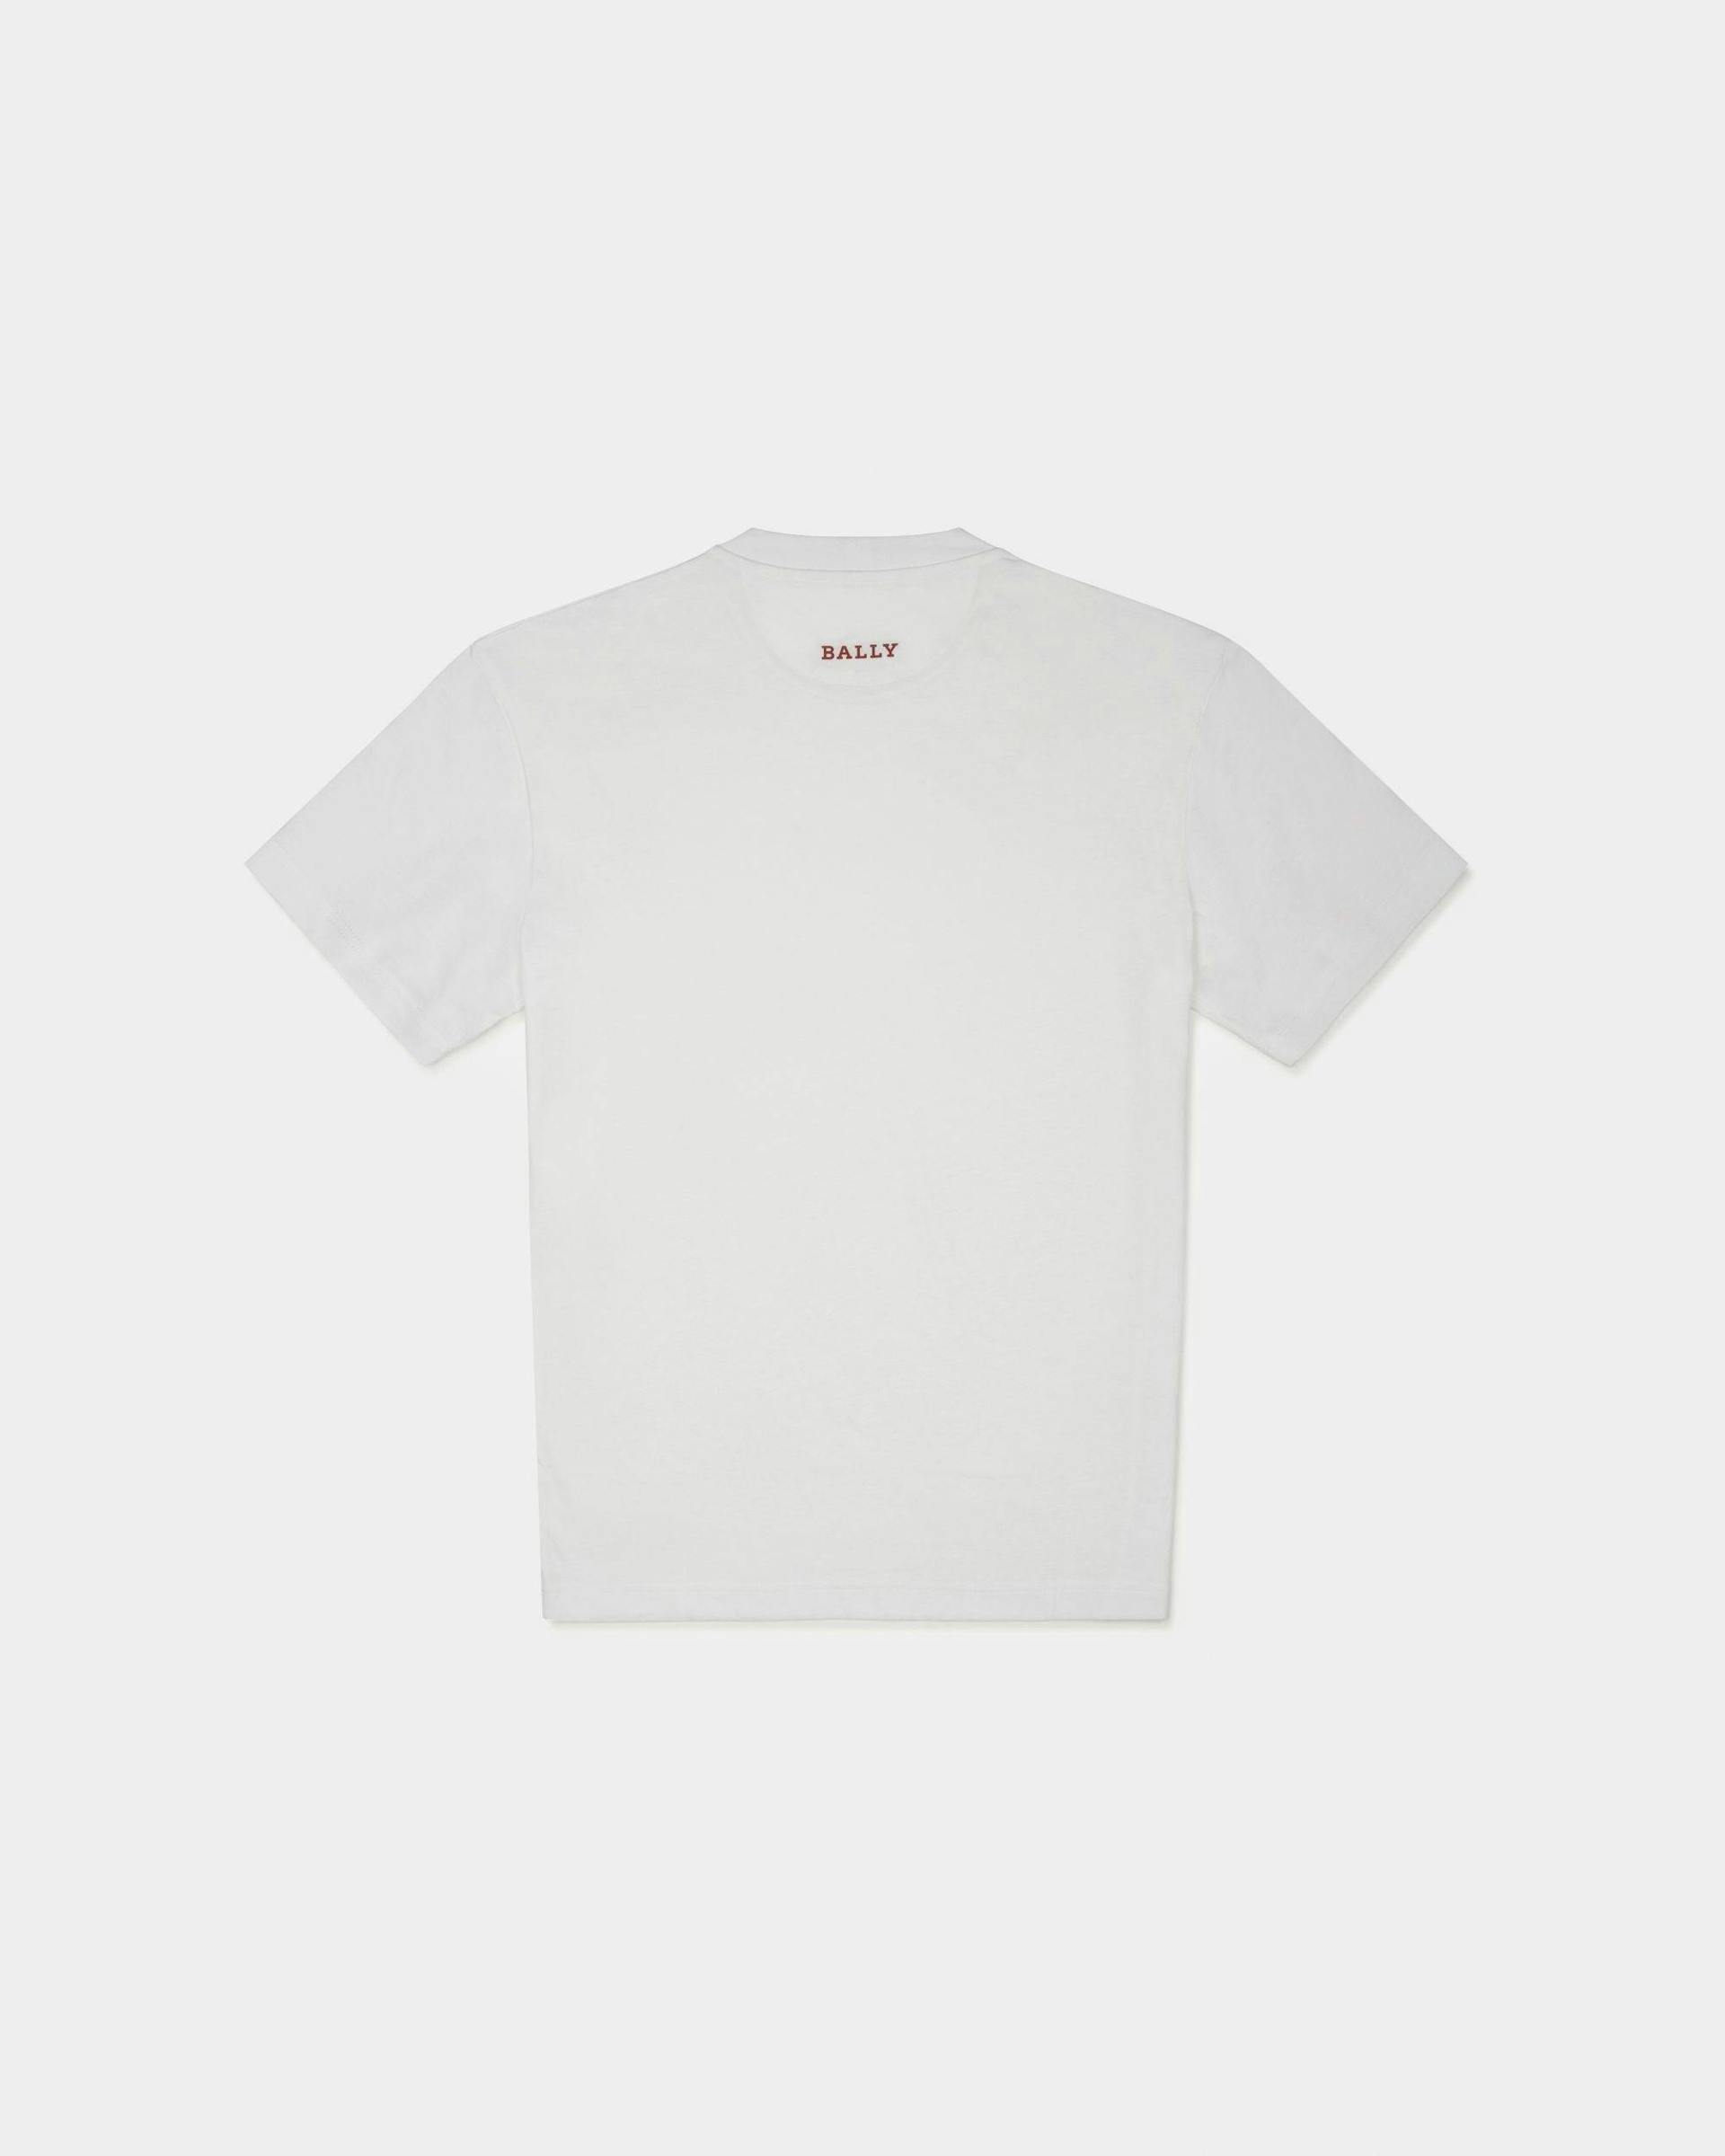 Peak Outlook T-Shirt - Men's - Bally - 01